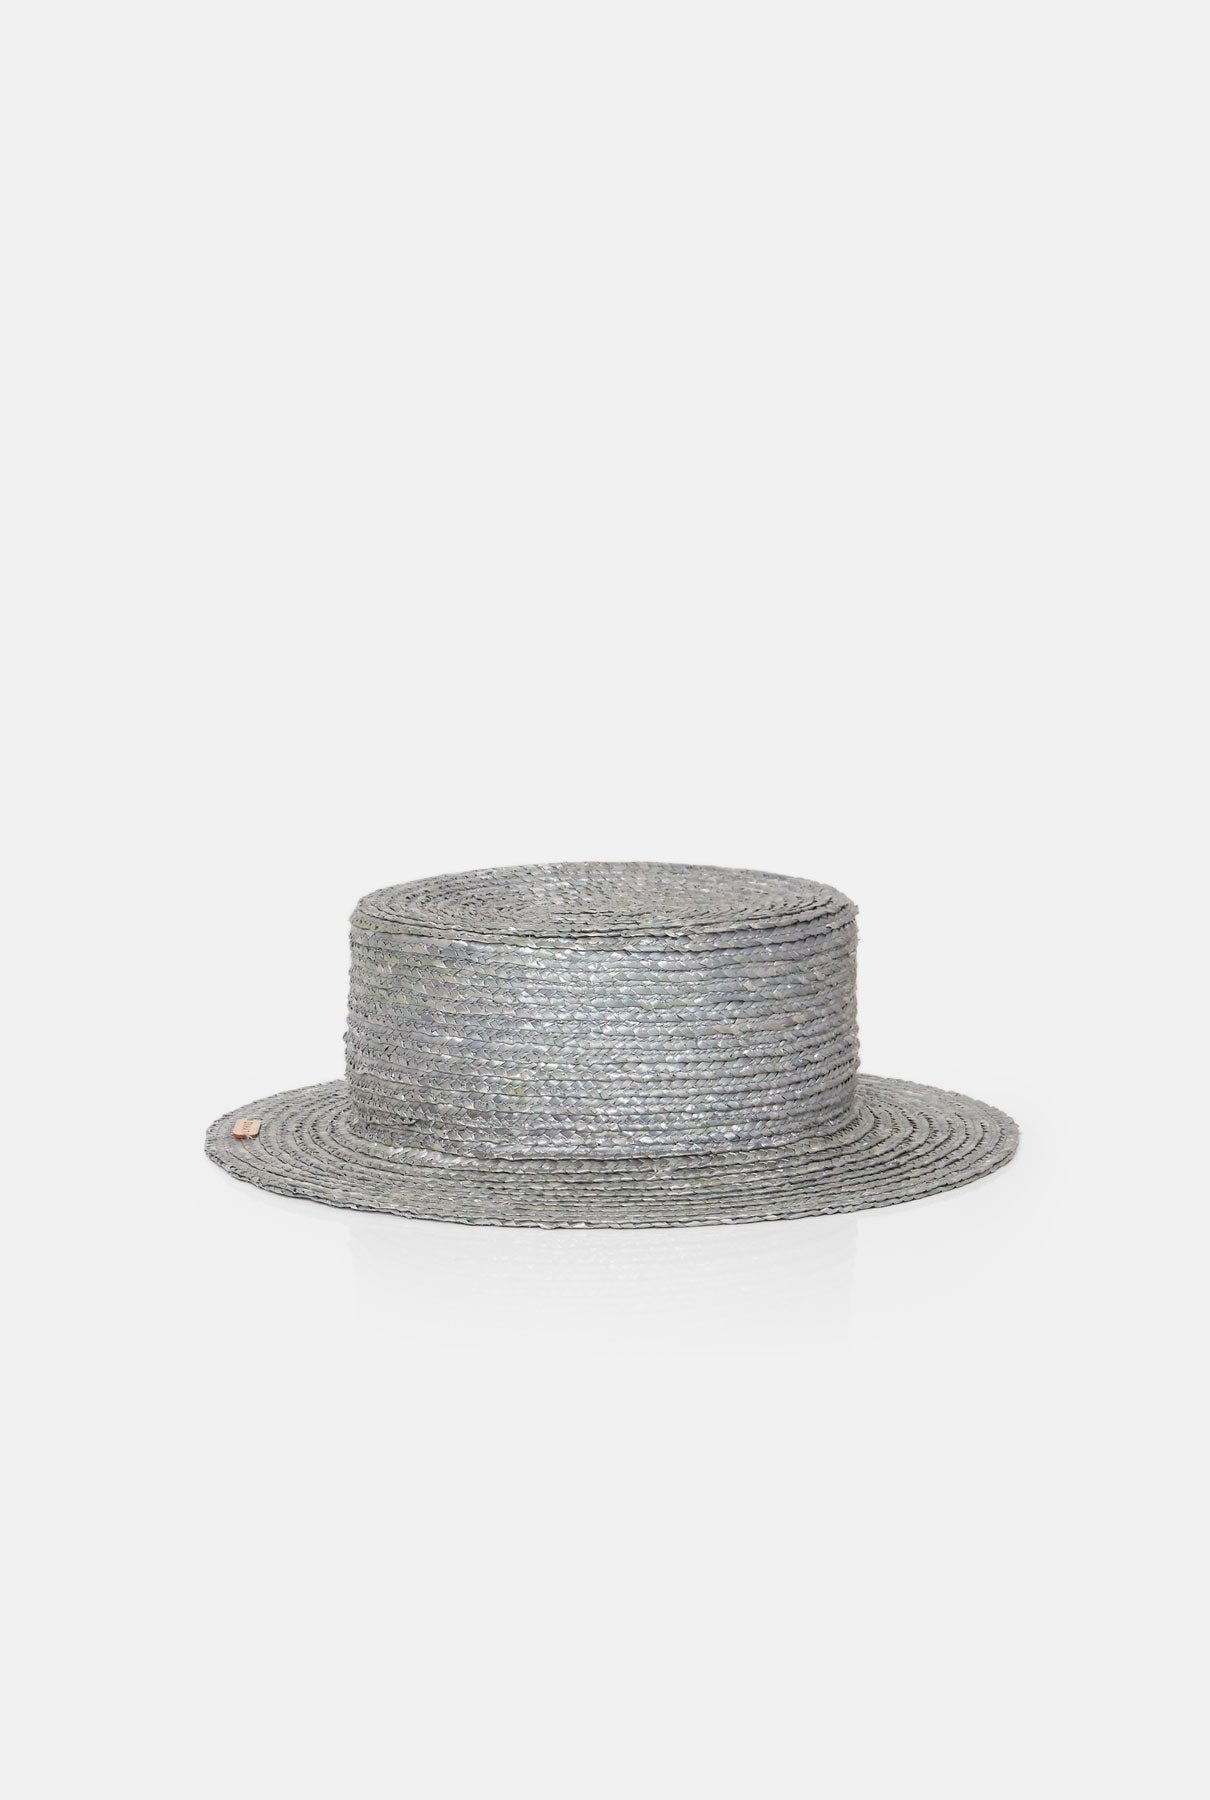 Canotier hat brim S grey headpiece Zahati 